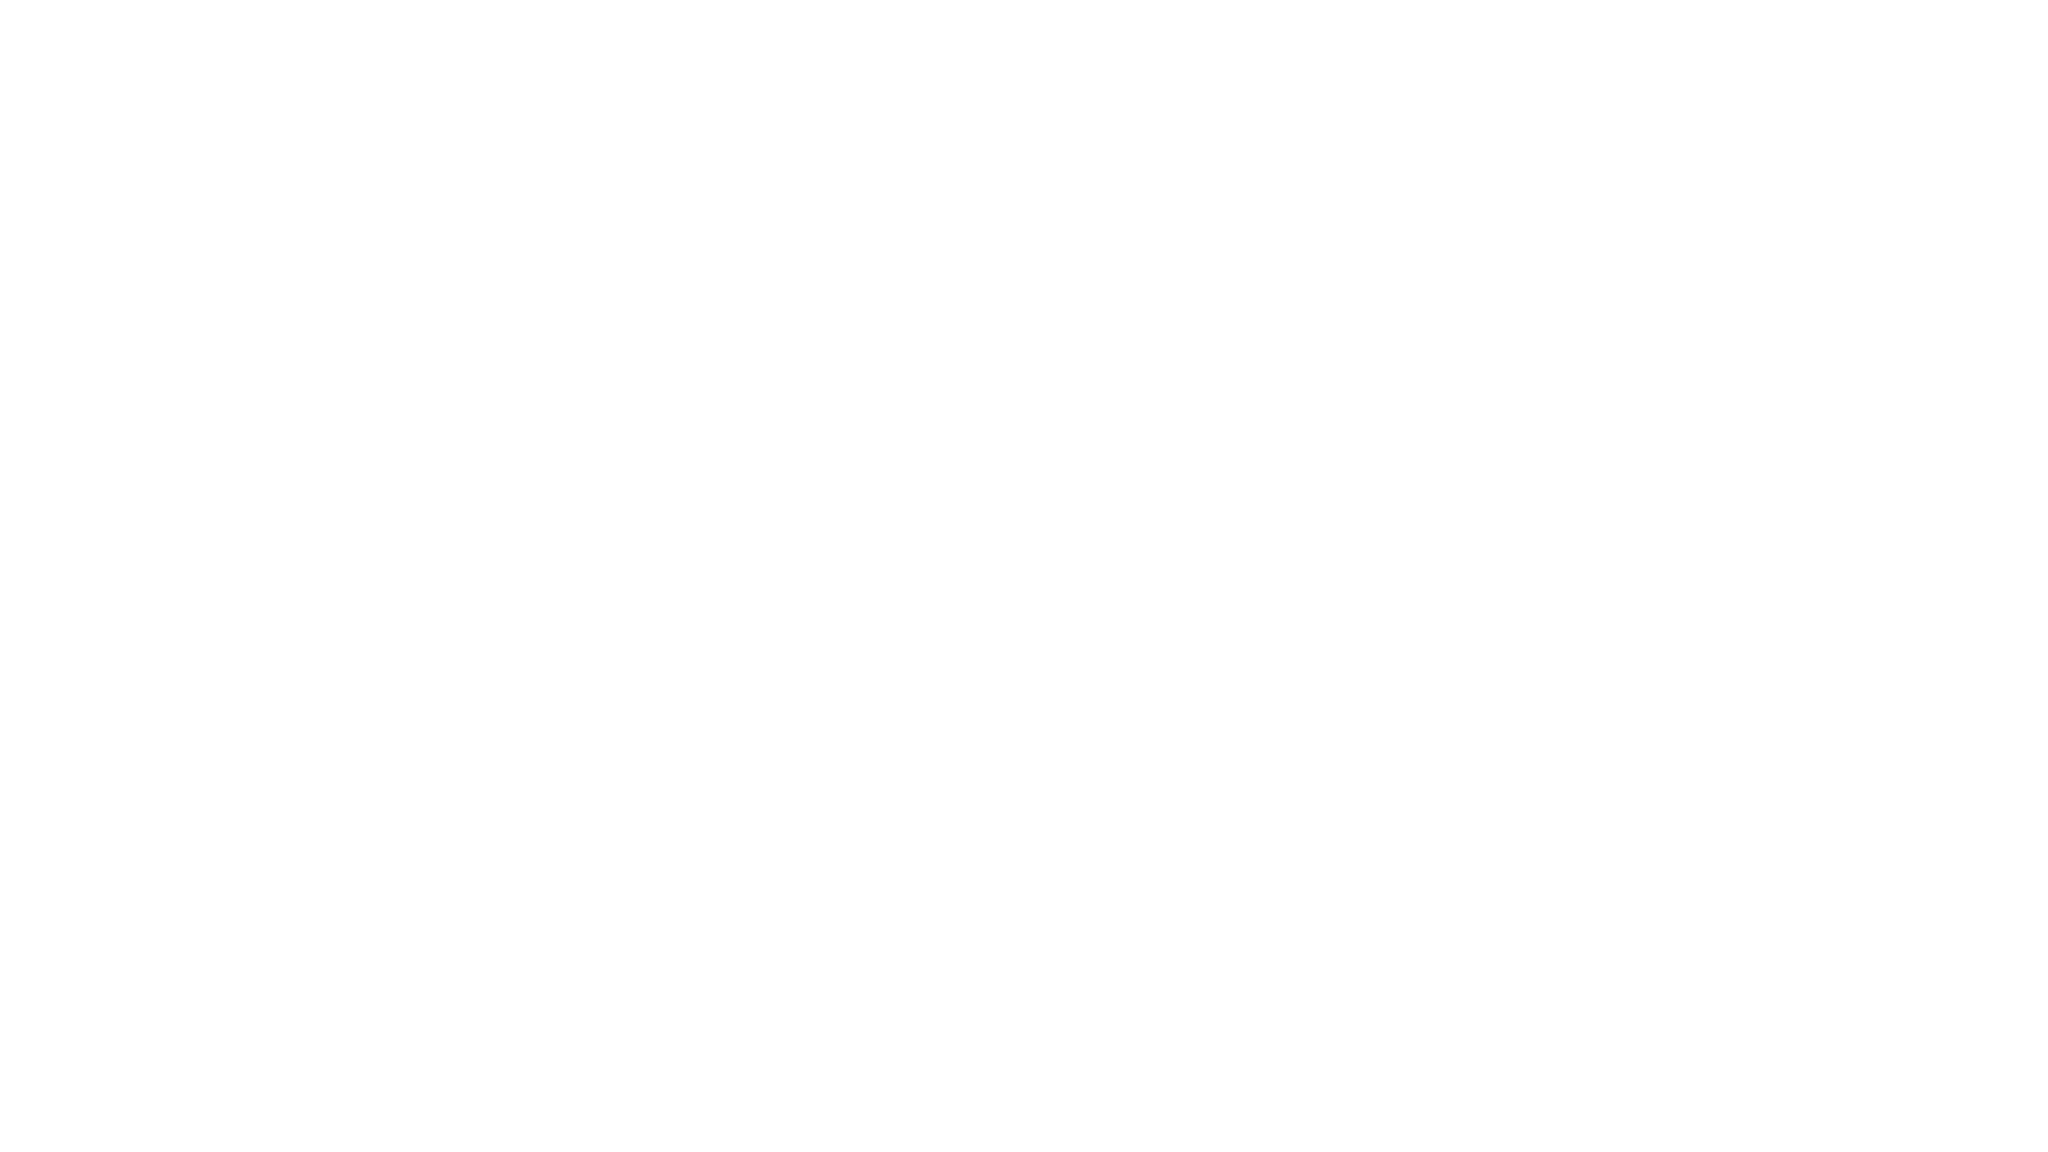 Les camps d’été proches de moi (ce qu’il faut chercher) - Finest Camps d'été de l'Amérique